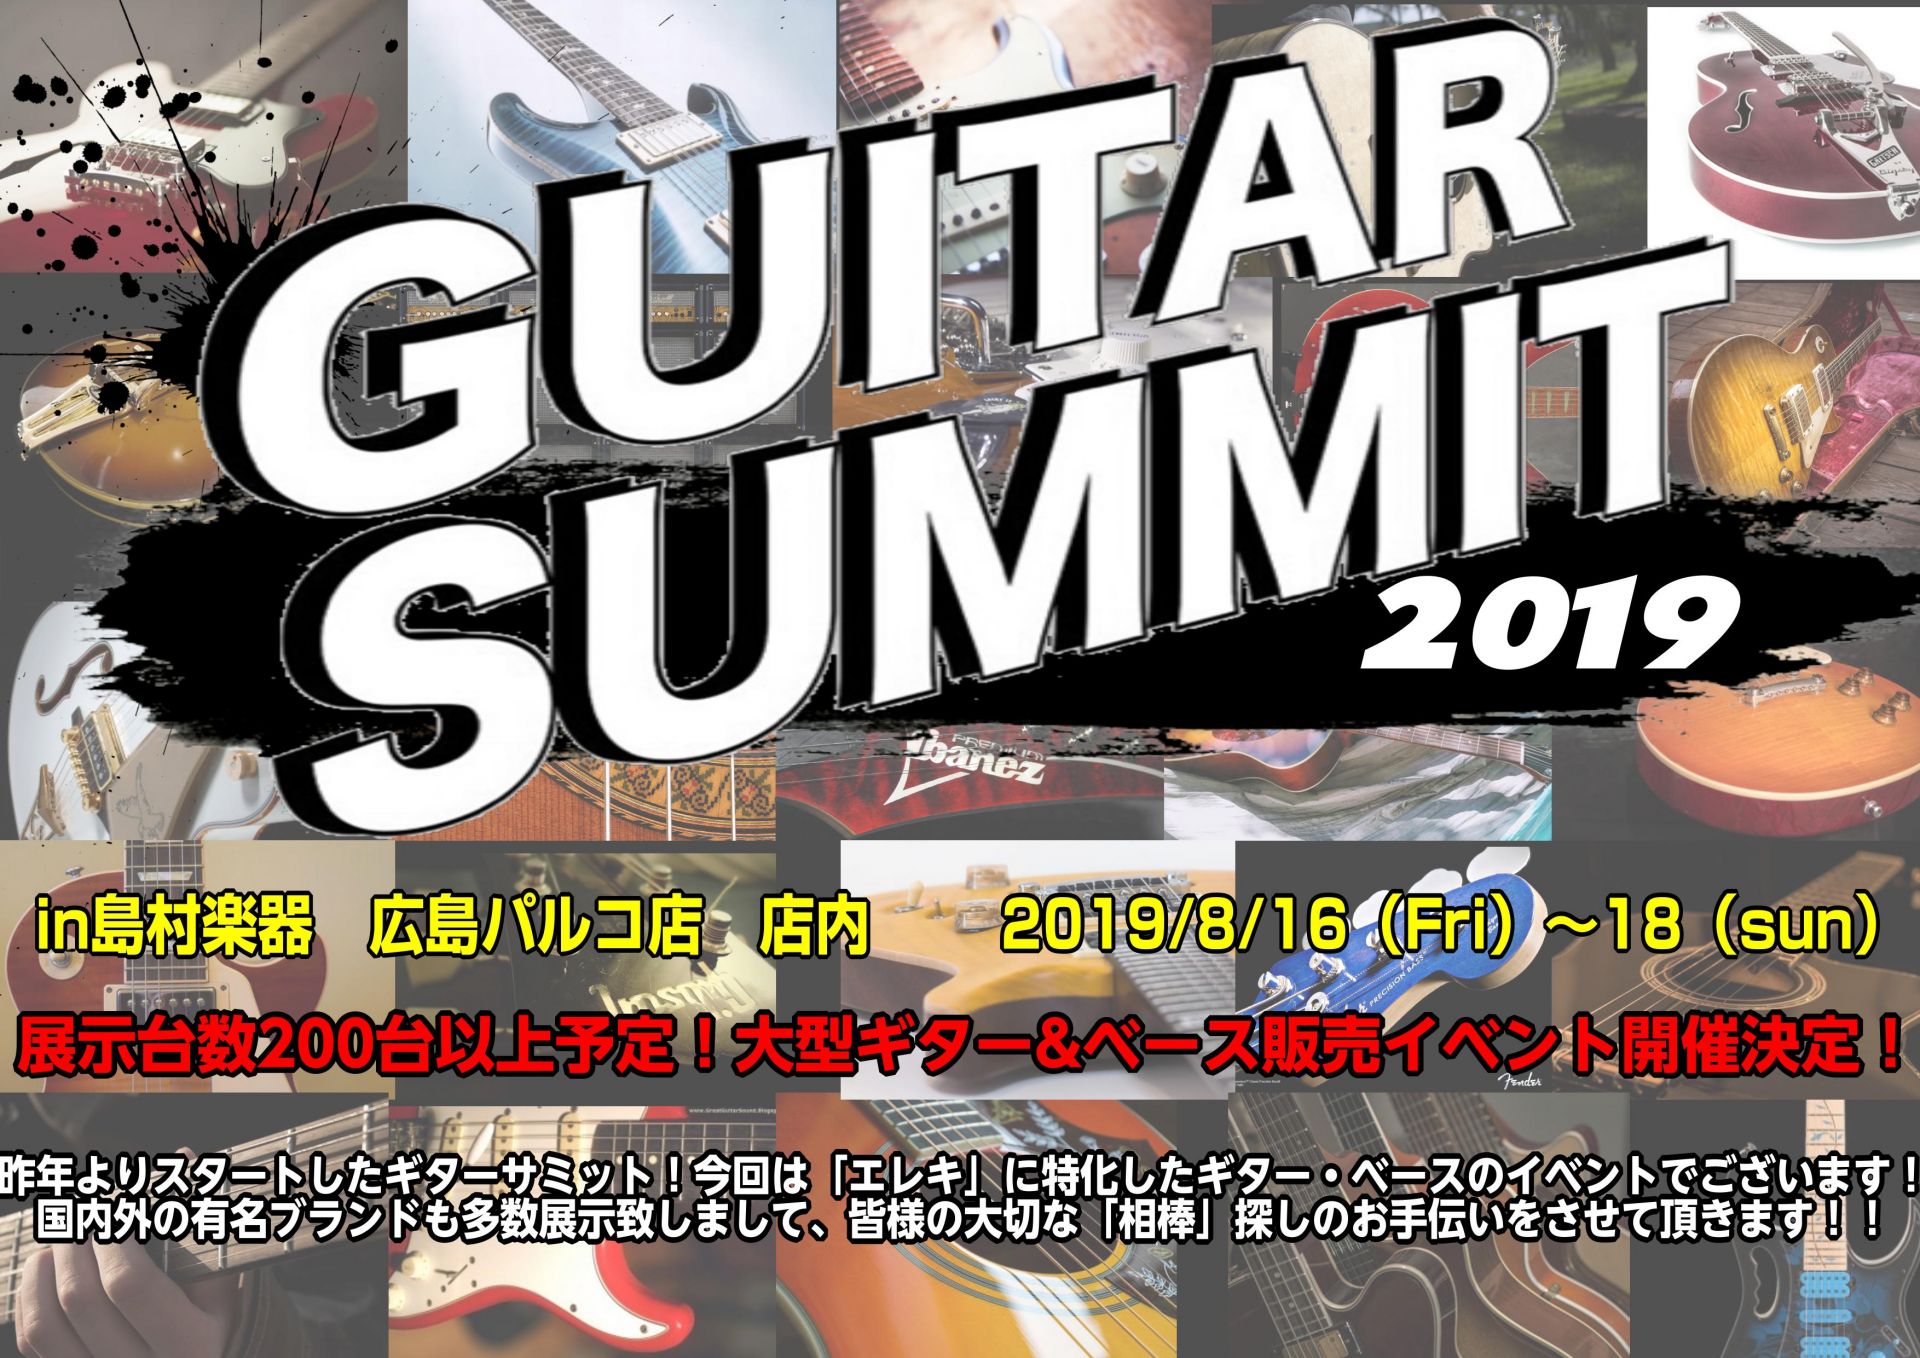 【イベント】ギターサミットforエレクトリック2019開催決定！ ※8/2更新